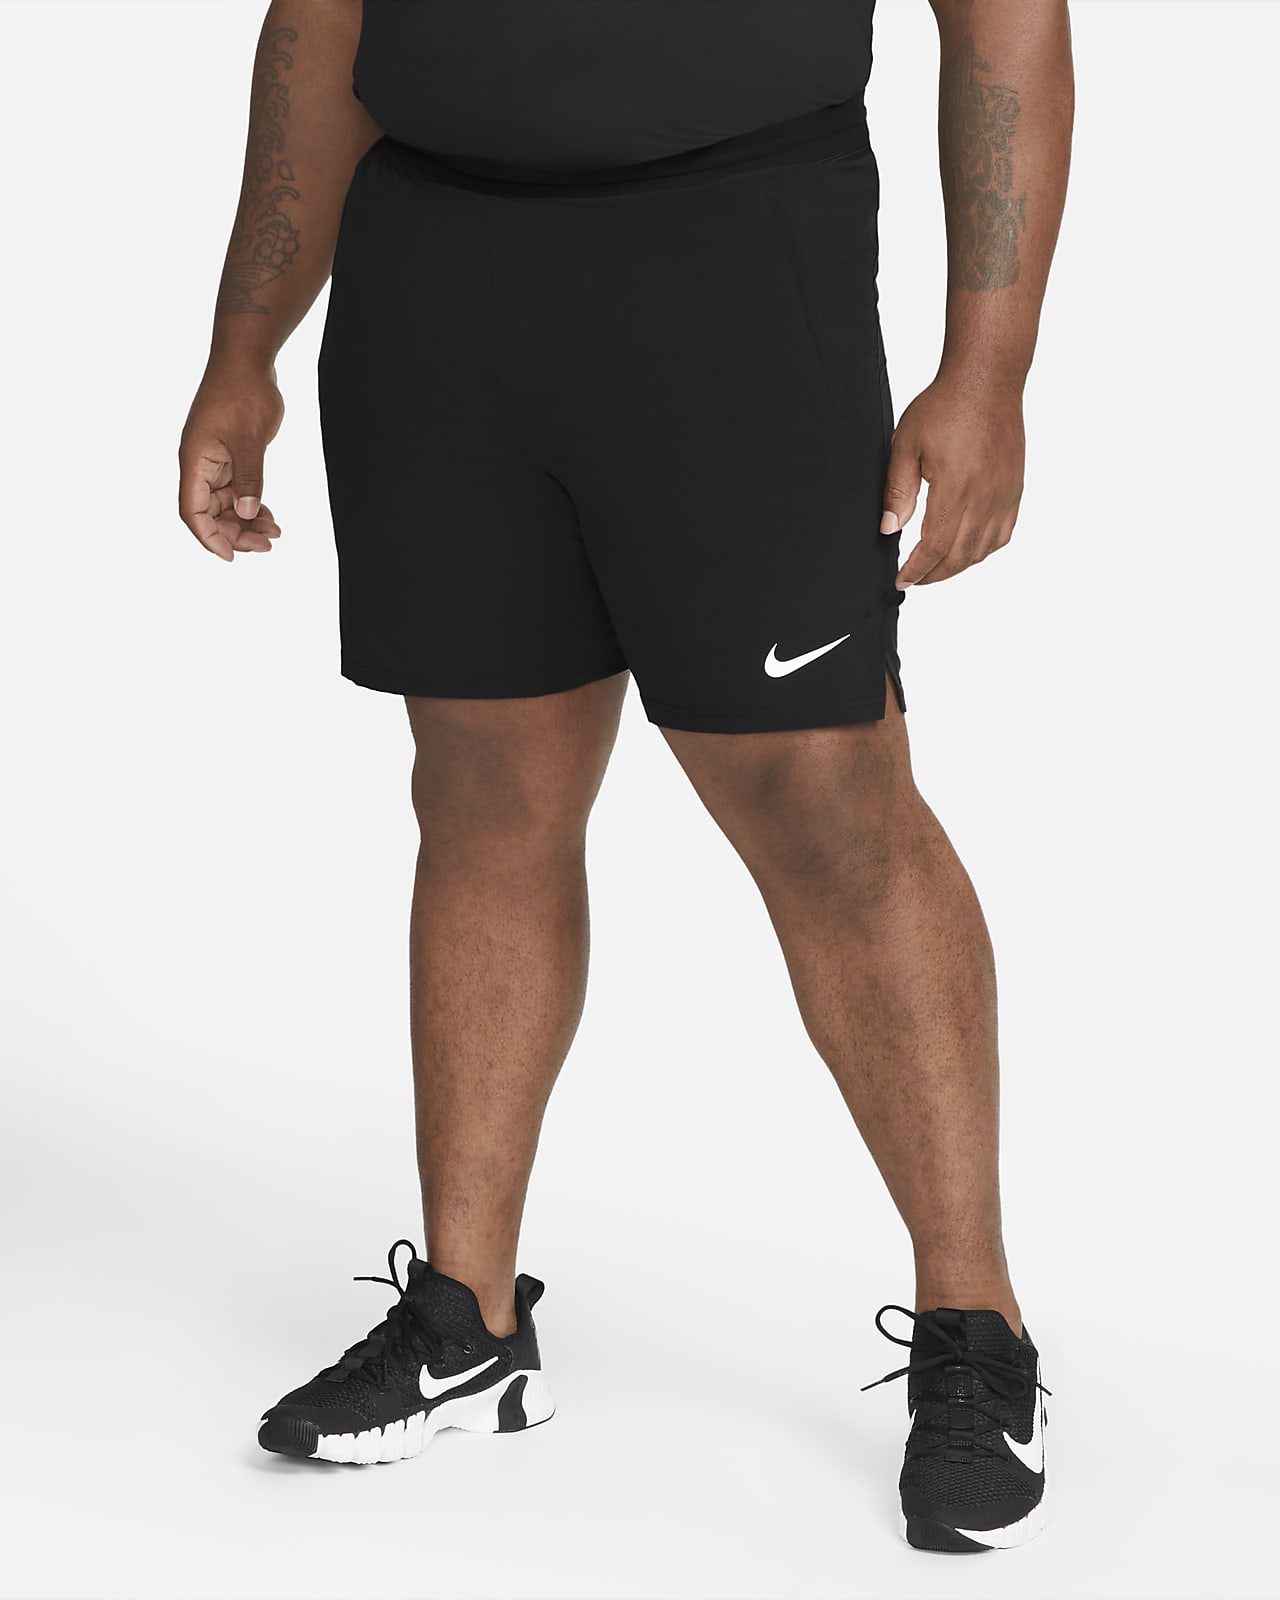 Nike Dri-Fit Flex Woven 9 Short - Black/Black/White